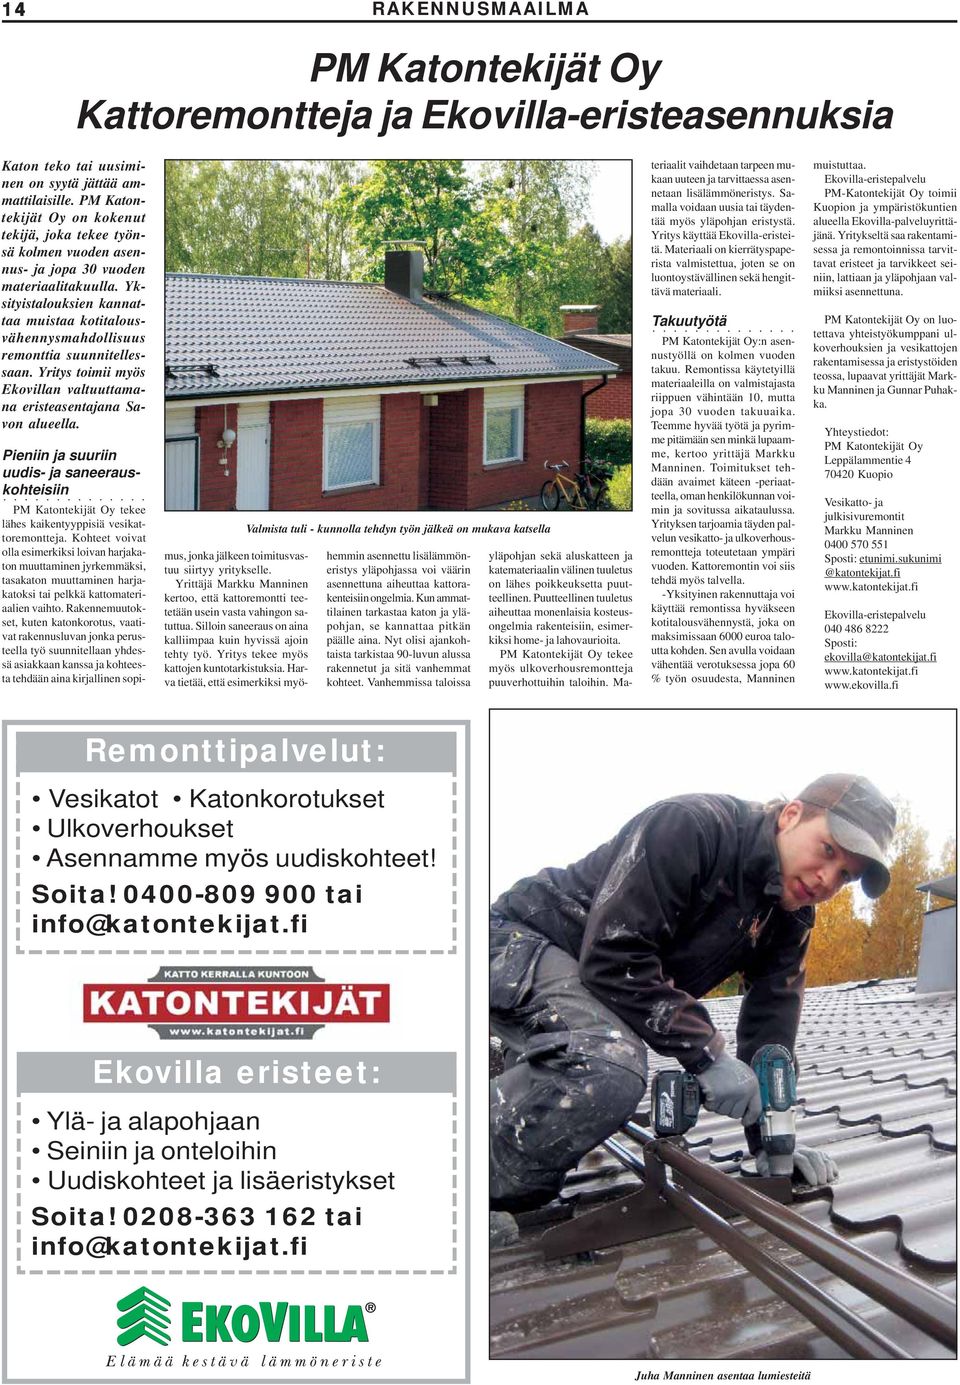 Yksityistalouksien kannattaa muistaa kotitalousvähennysmahdollisuus remonttia suunnitellessaan. Yritys toimii myös Ekovillan valtuuttamana eristeasentajana Savon alueella.